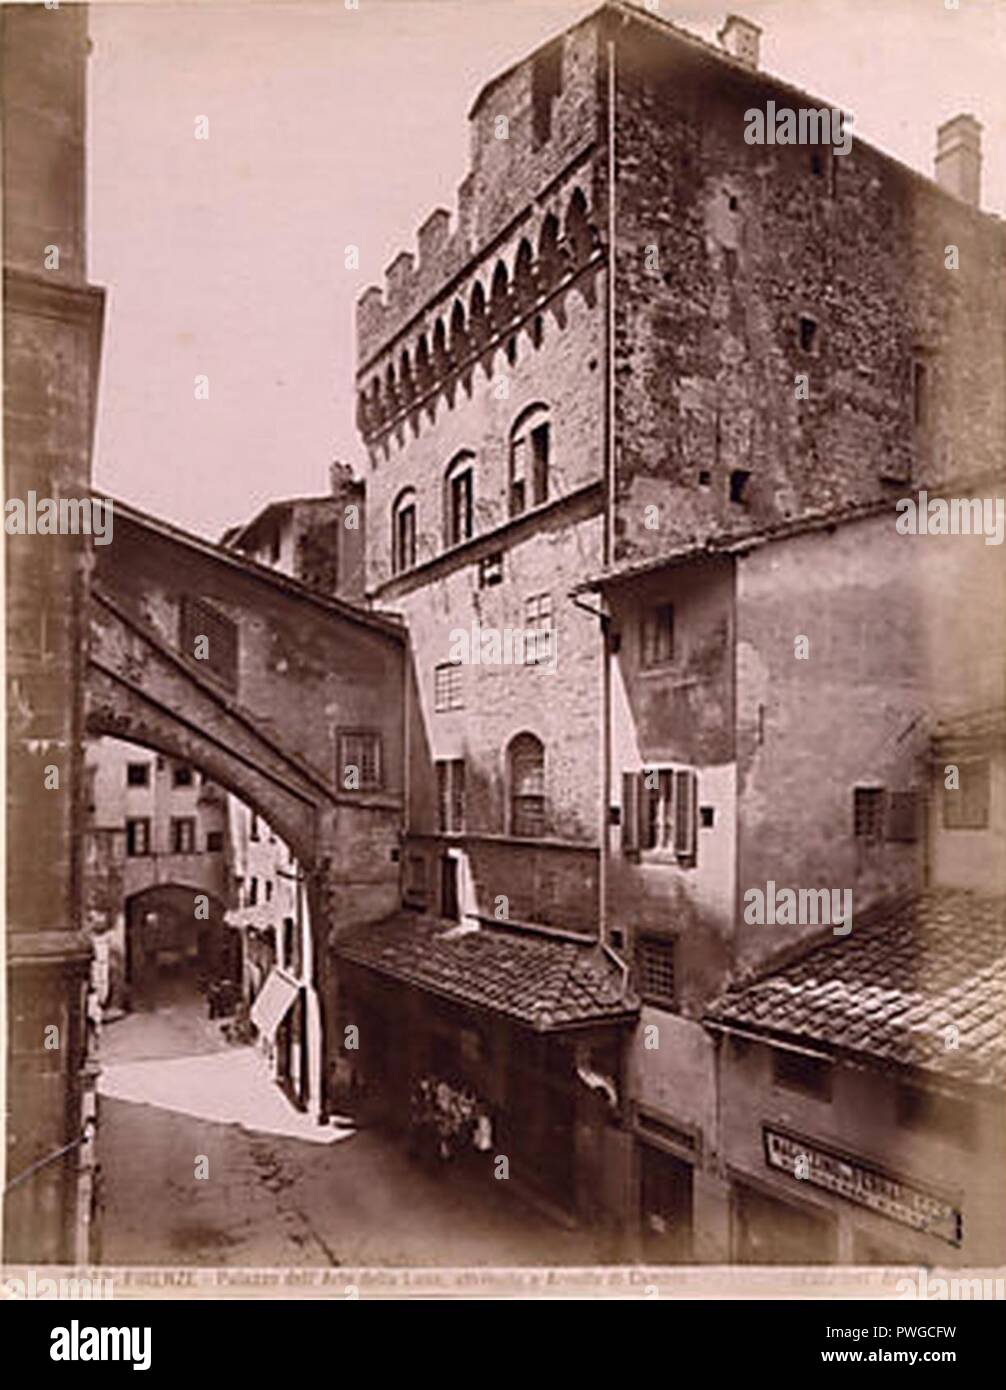 Brogi Carlo (1850-1925) - n. 8542 - Firenze - Palazzo dell'arte della Lana  Stock Photo - Alamy